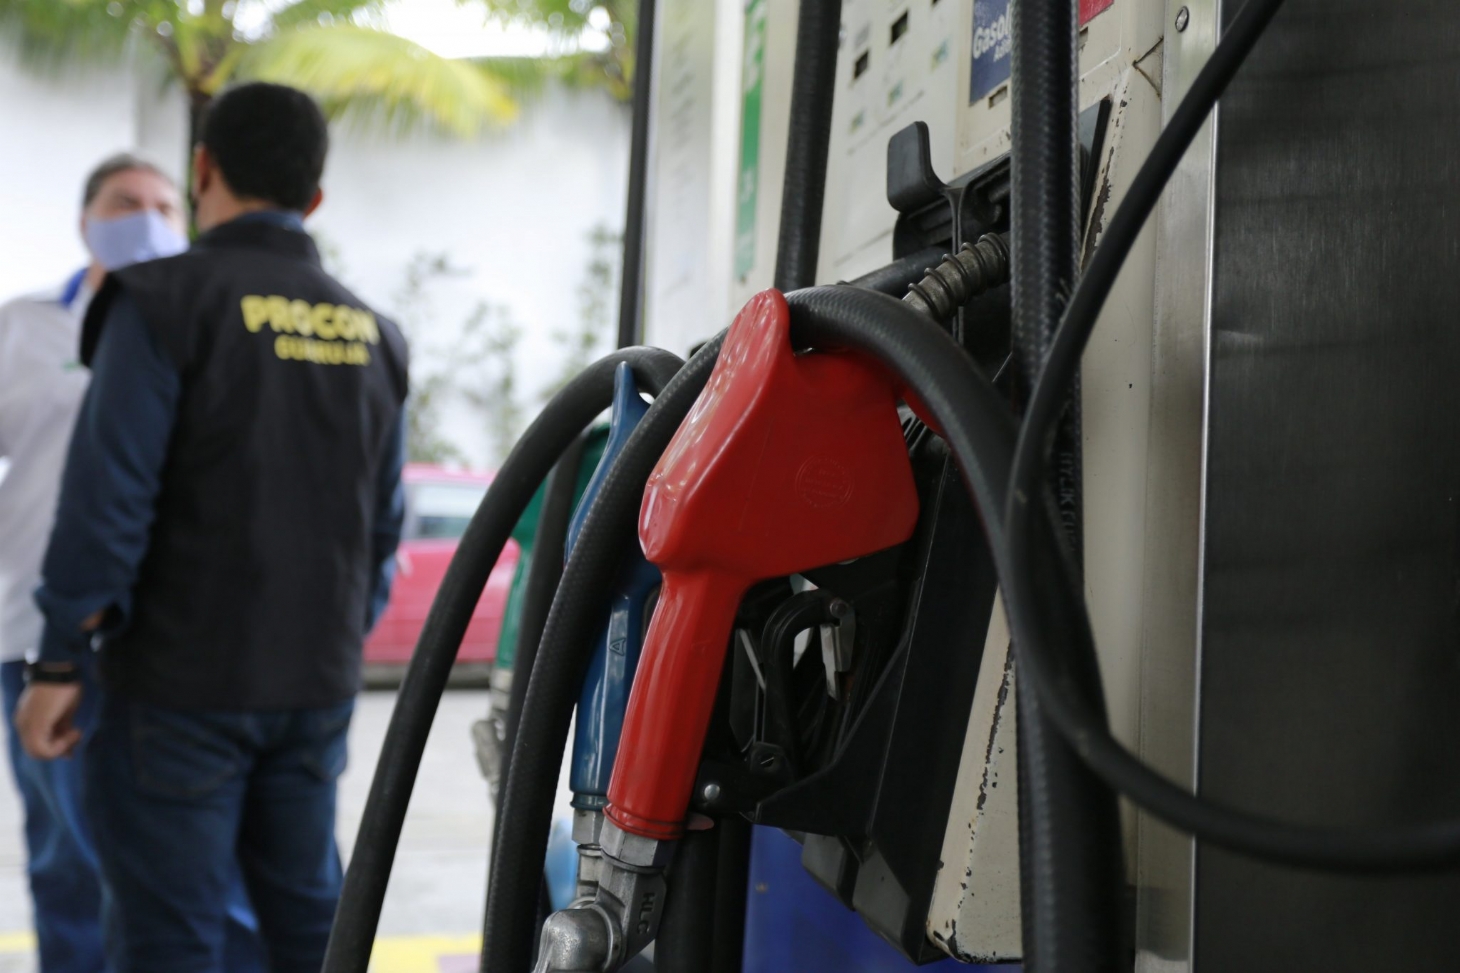 Procon Guarujá realiza fiscalização nos postos de combustíveis | Jornal da Orla